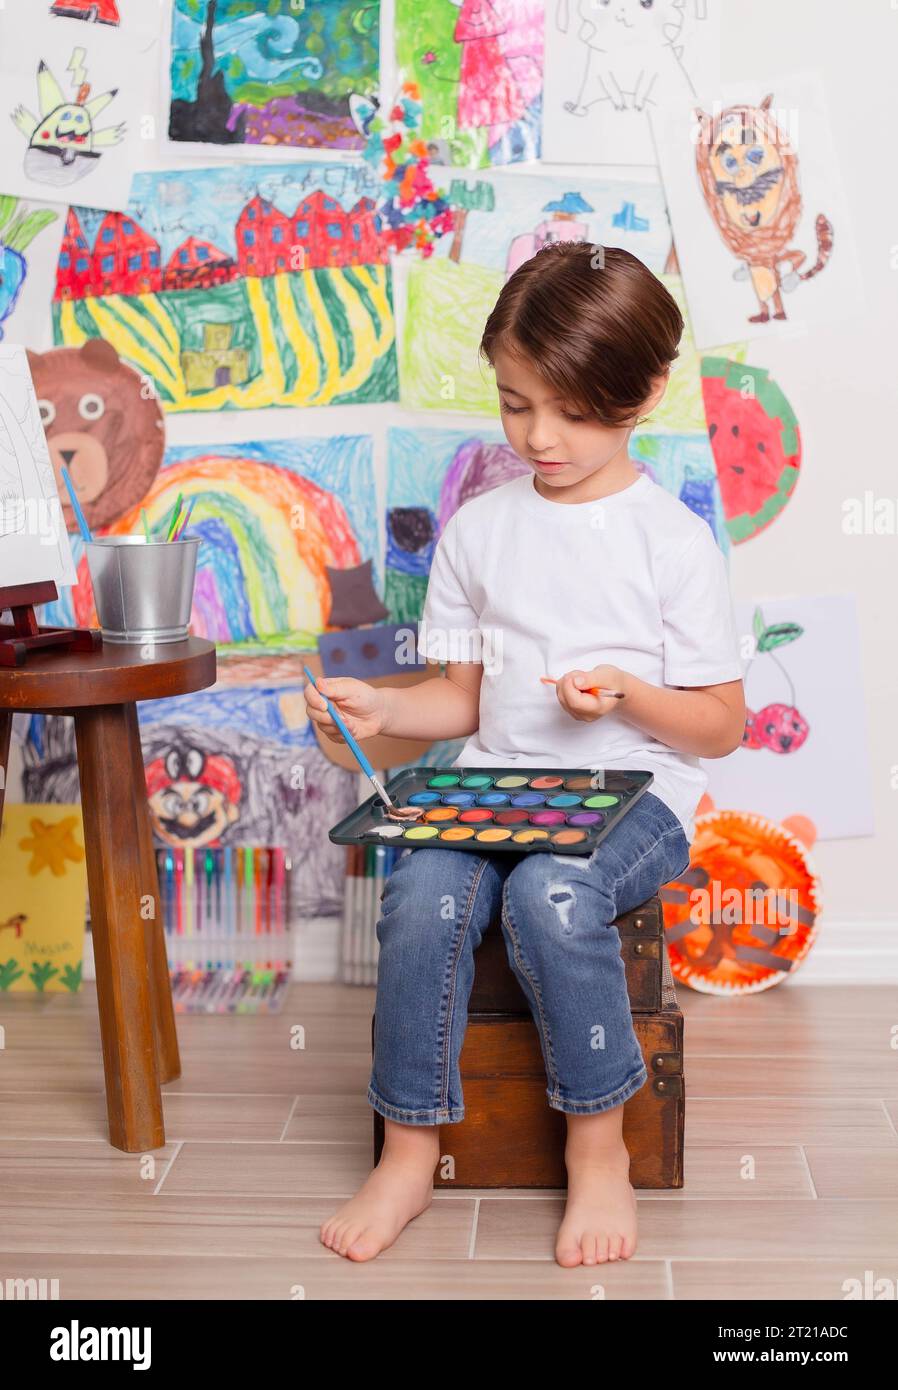 Un niño pequeño en un taburete mientras crea una obra maestra en un lienzo grande en un estudio de arte Foto de stock